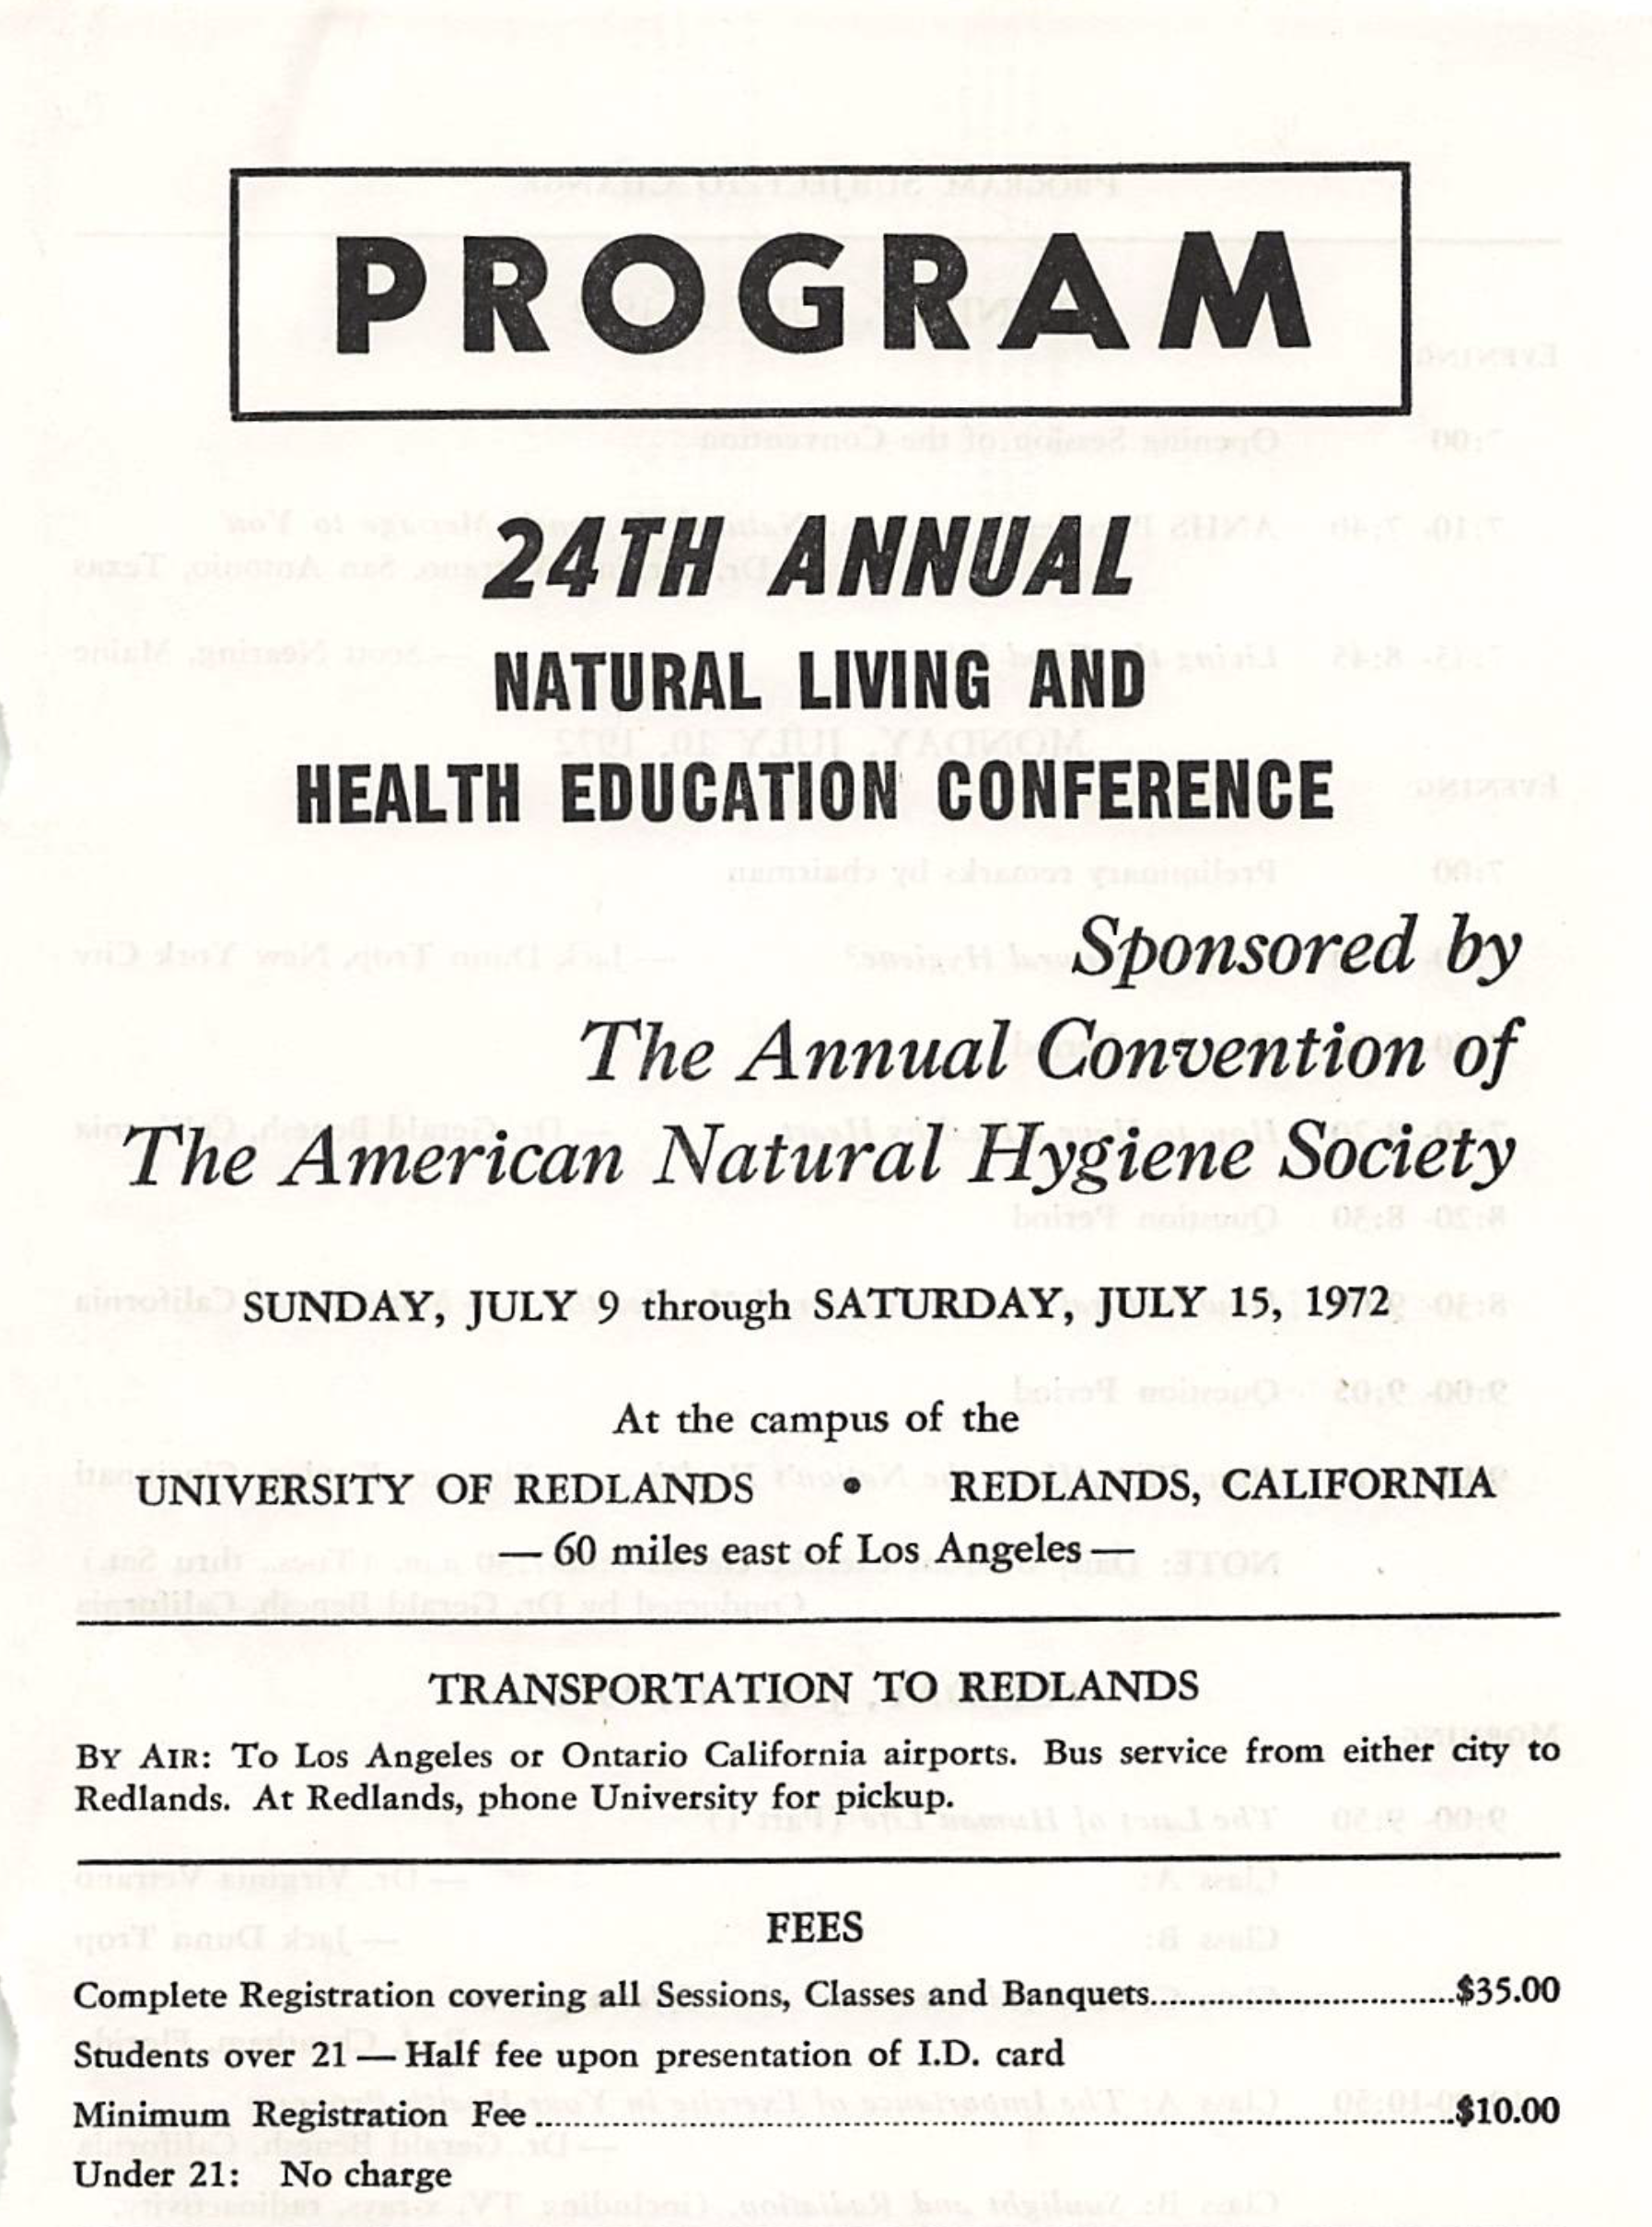 Conference Program. Redlands, 1972